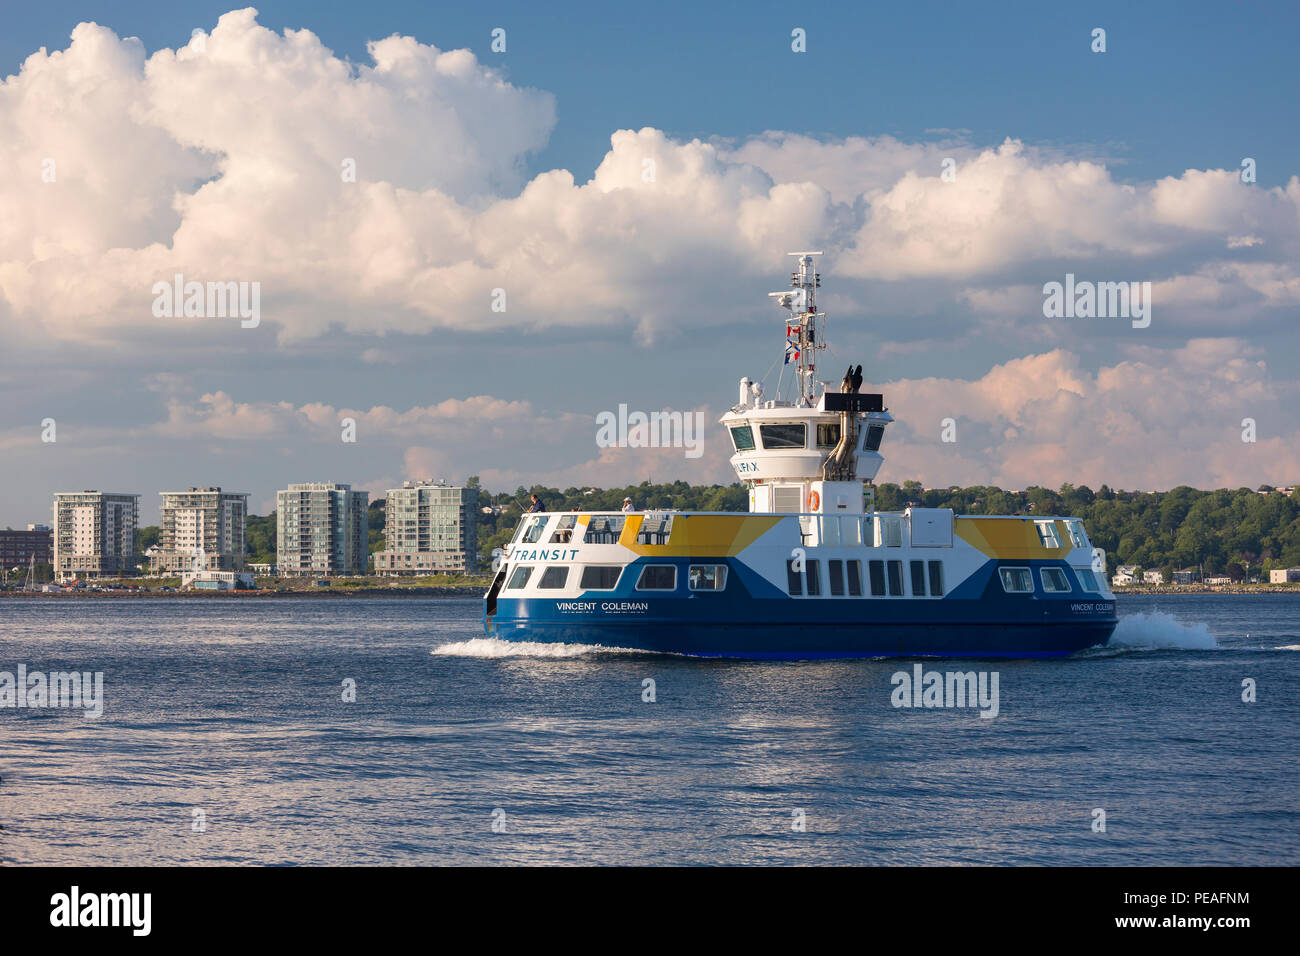 HALIFAX, Nova Scotia, Canada - Woodside ferry boat, denominato Vincent Coleman, in porto. Foto Stock